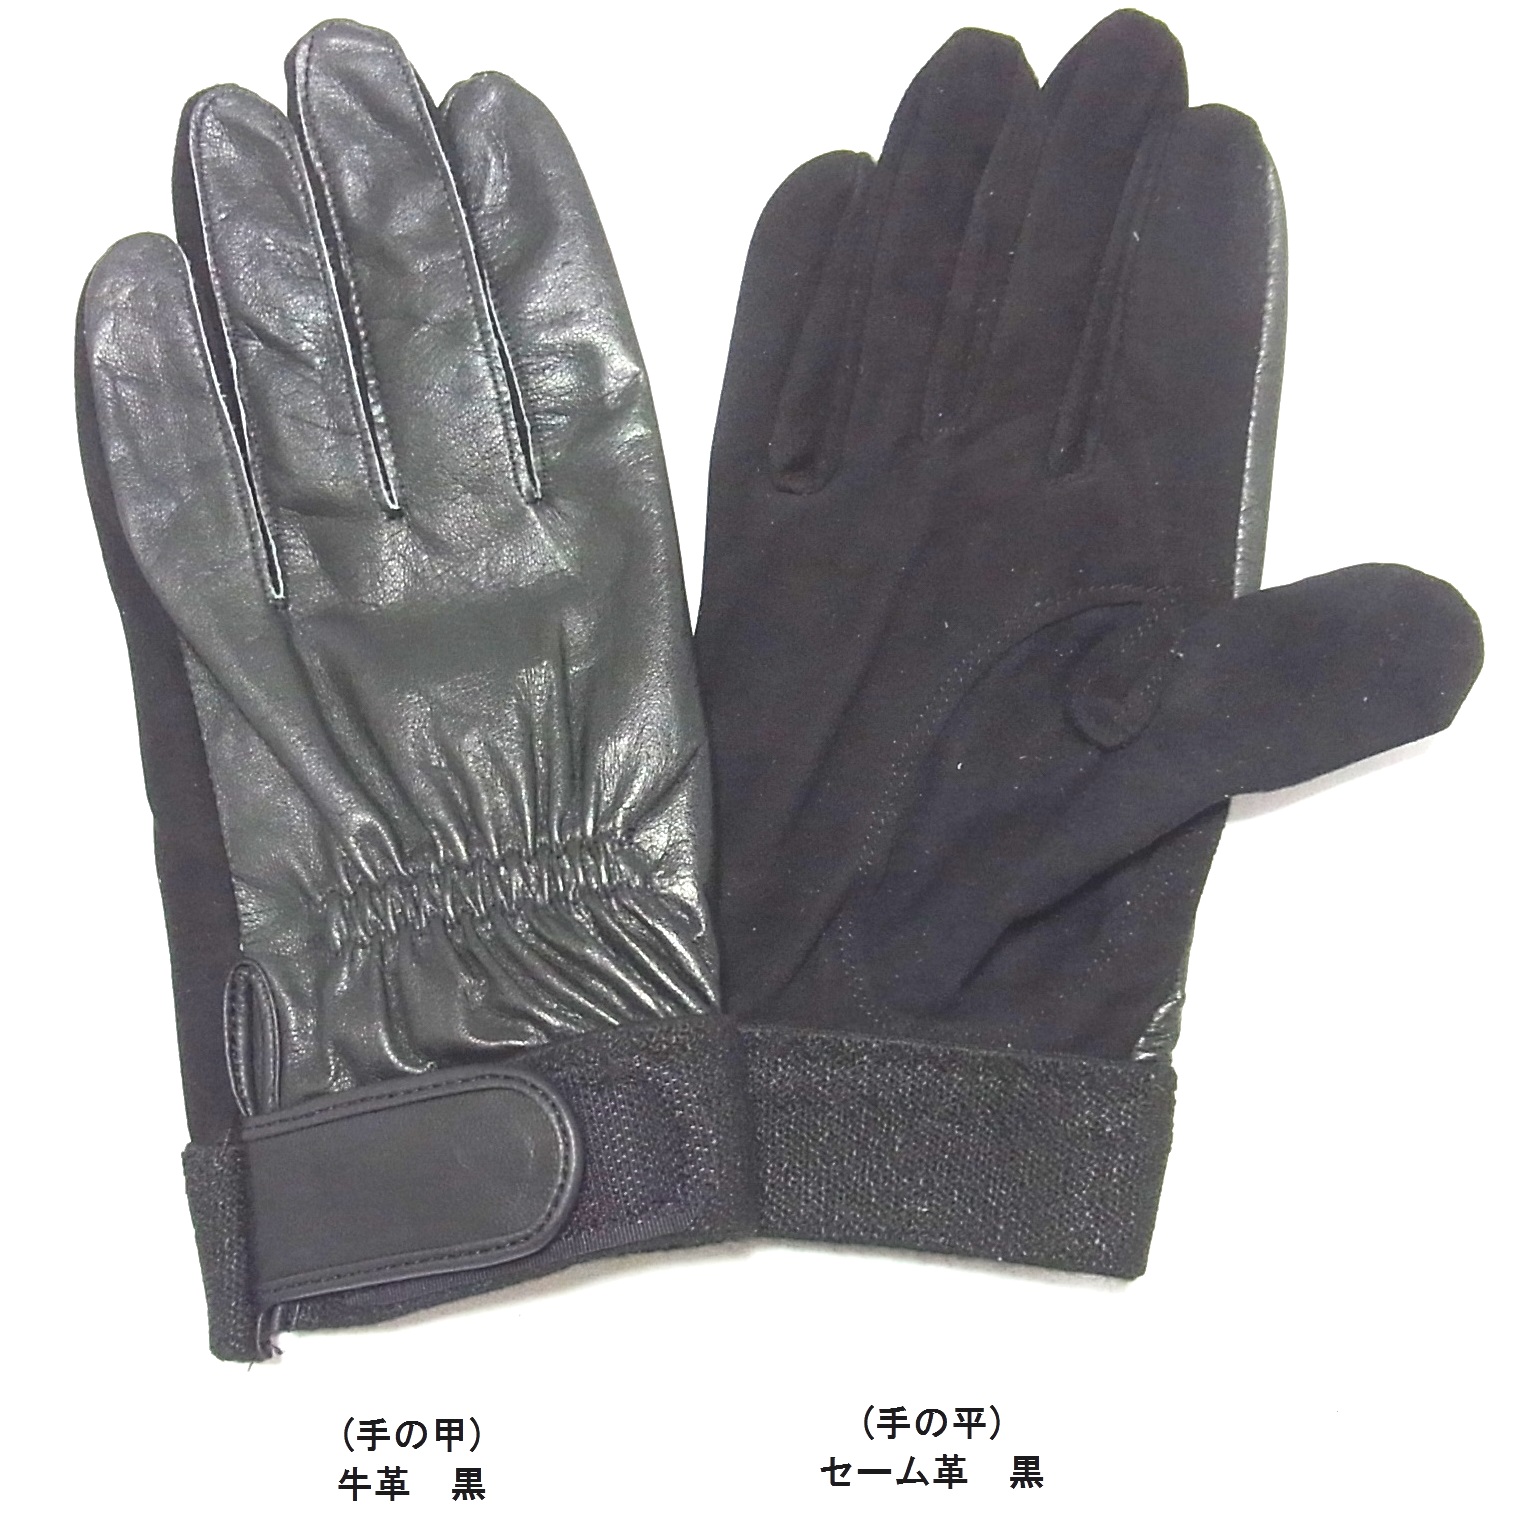 1)手袋ジャンル | RESCUE 北原シューズ